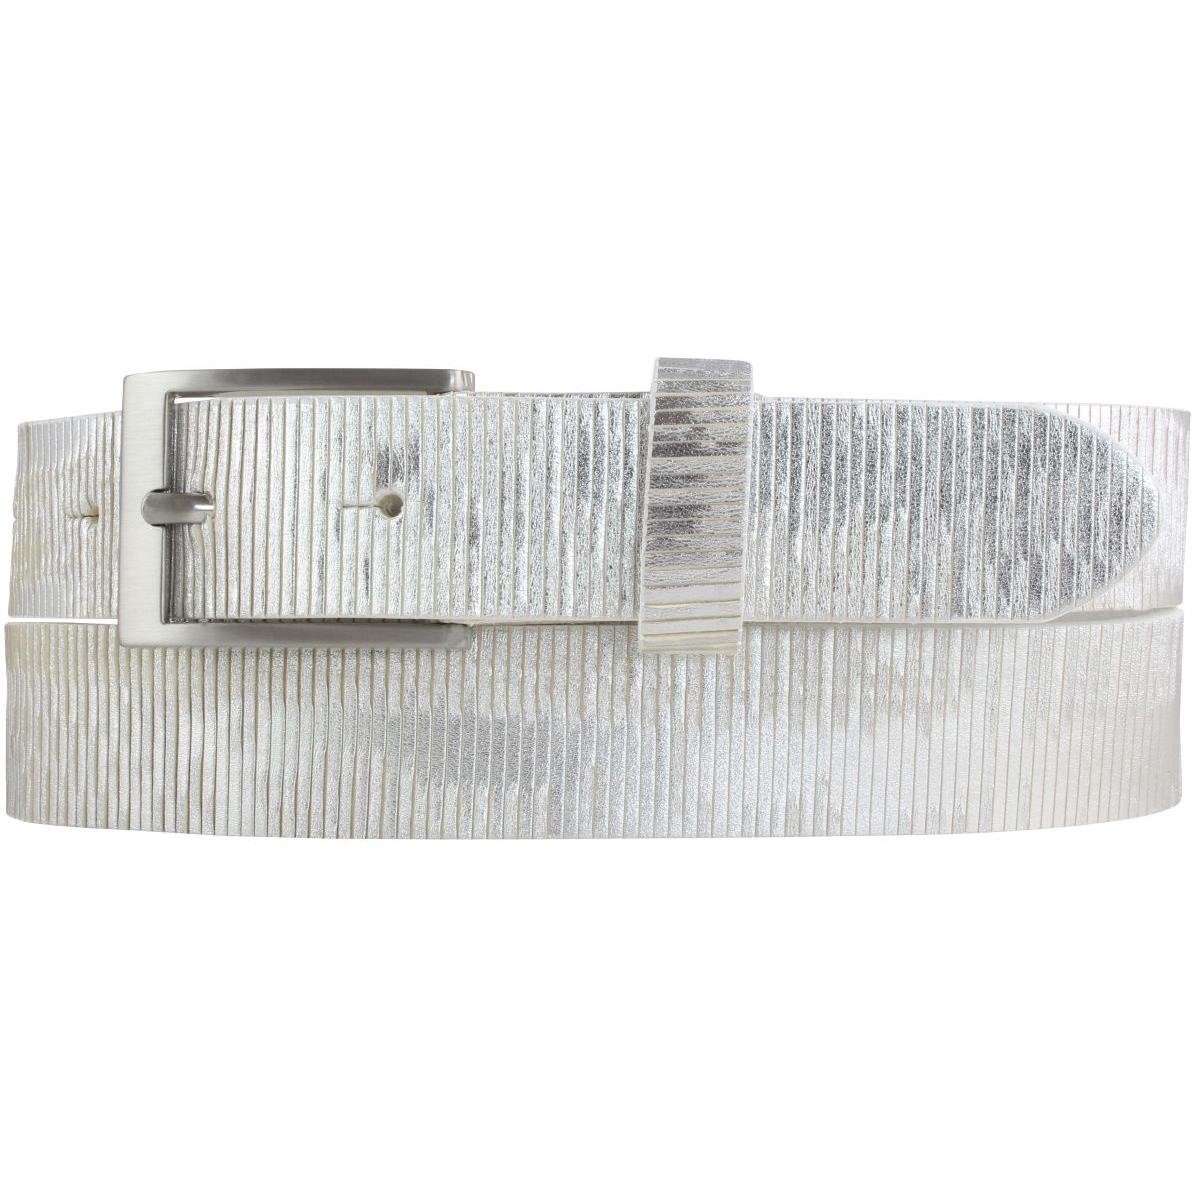 BELTINGER Ledergürtel Gürtel aus Vollrindleder Metall-Optik 3 cm - Leder-Gürtel Metallic-Loo Weiß, Silber